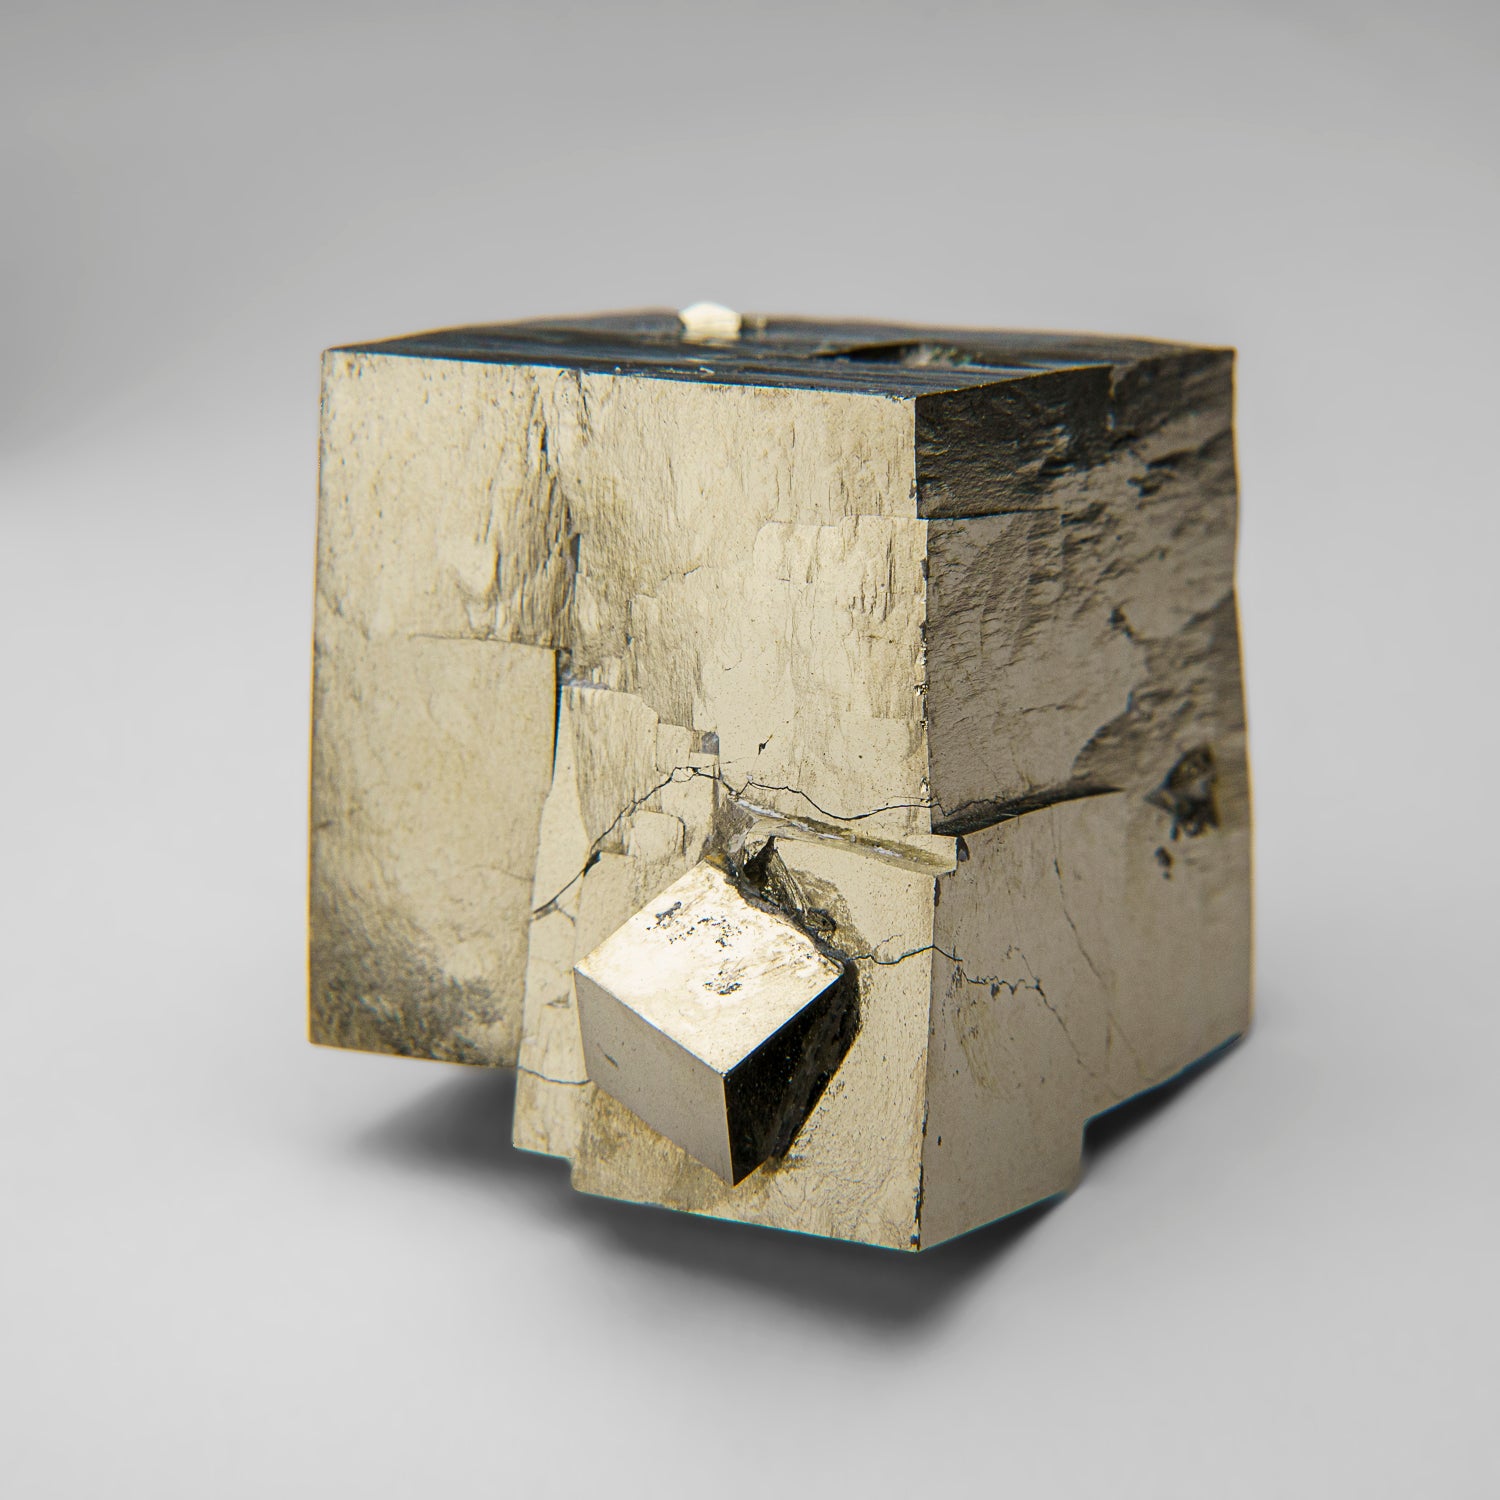 Pyrite Cube from Navajún, La Rioja Province, Spain (218 grams)